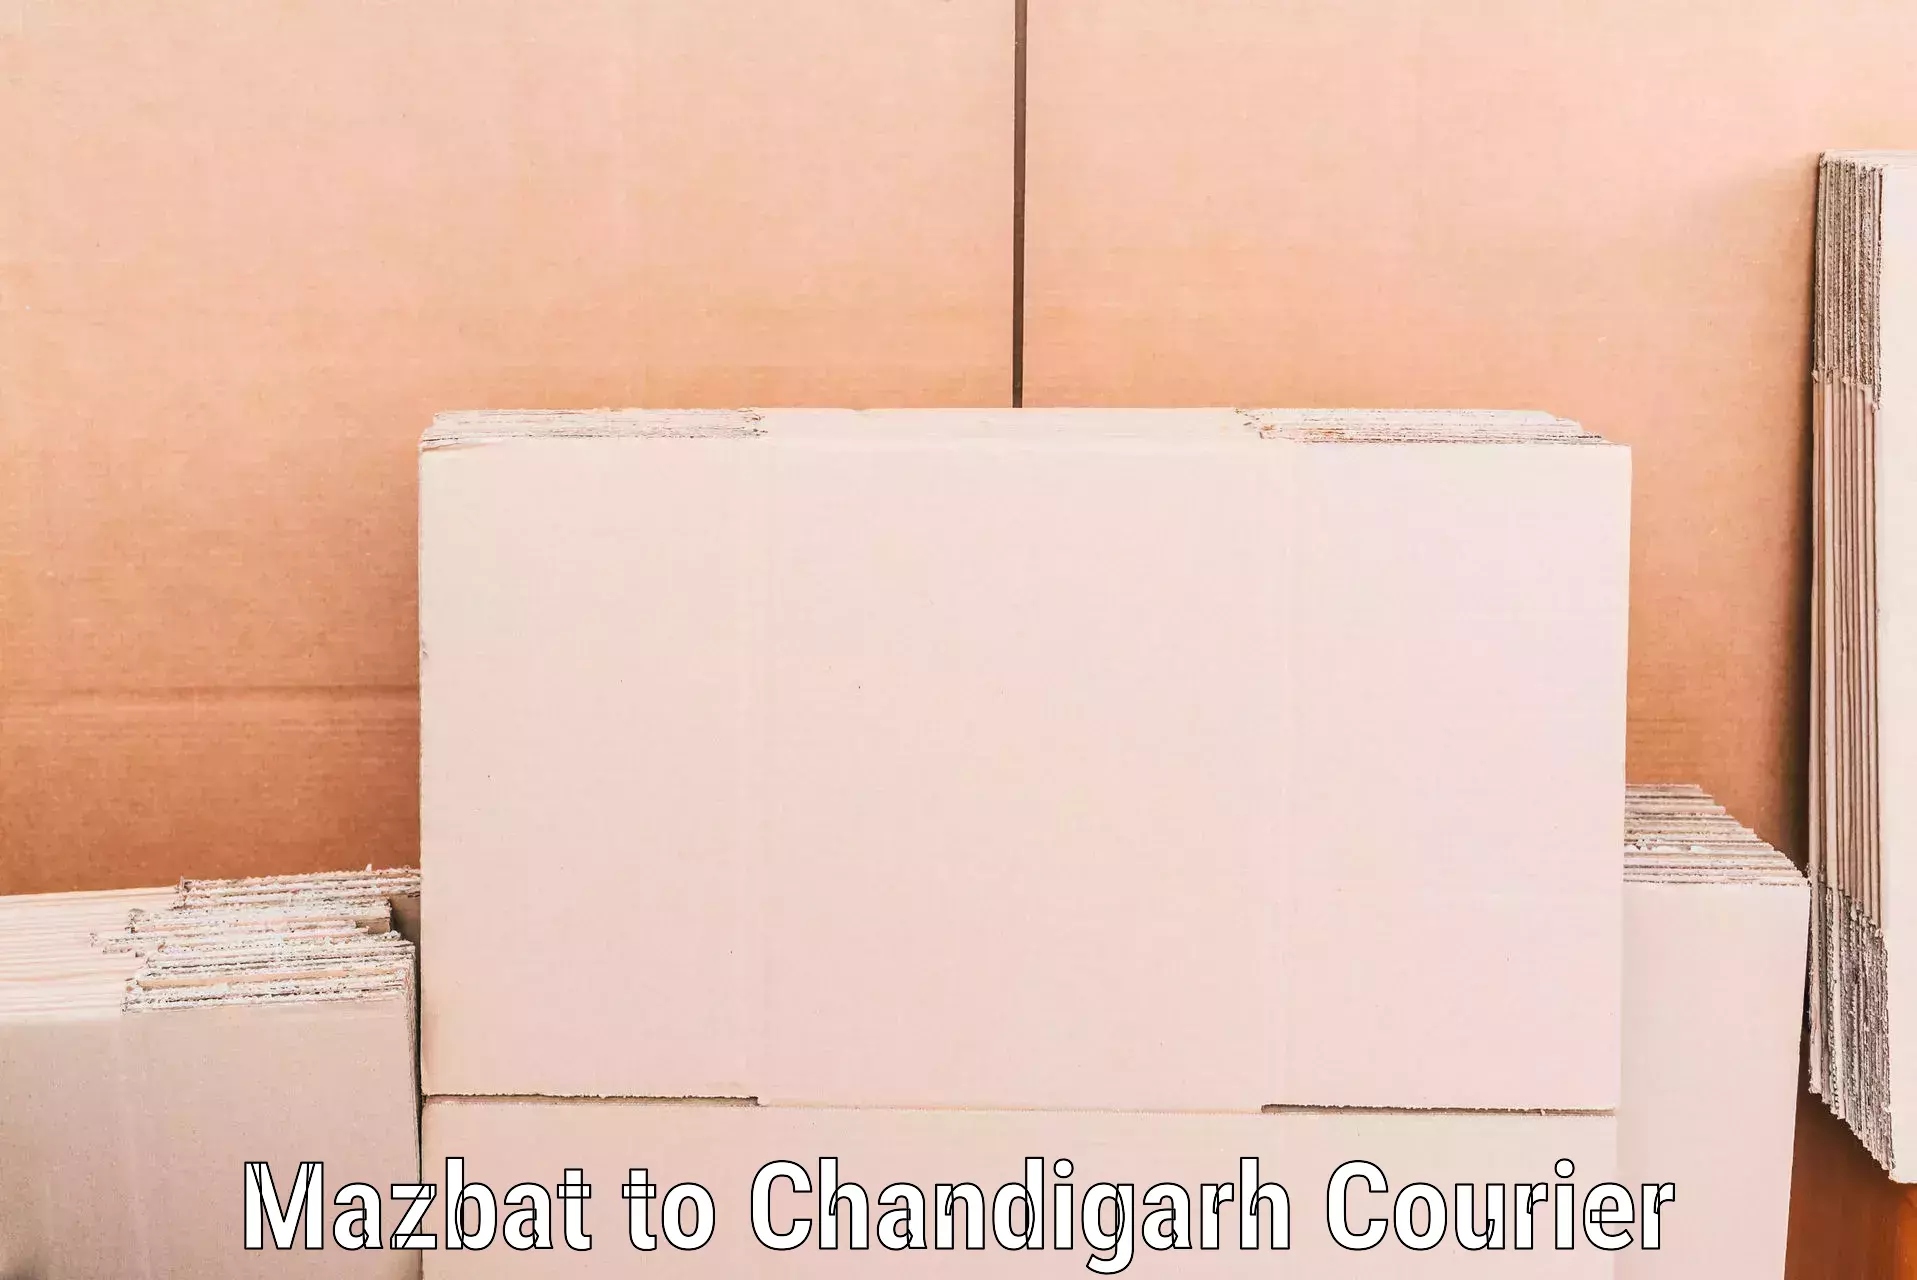 Furniture transport services Mazbat to Chandigarh